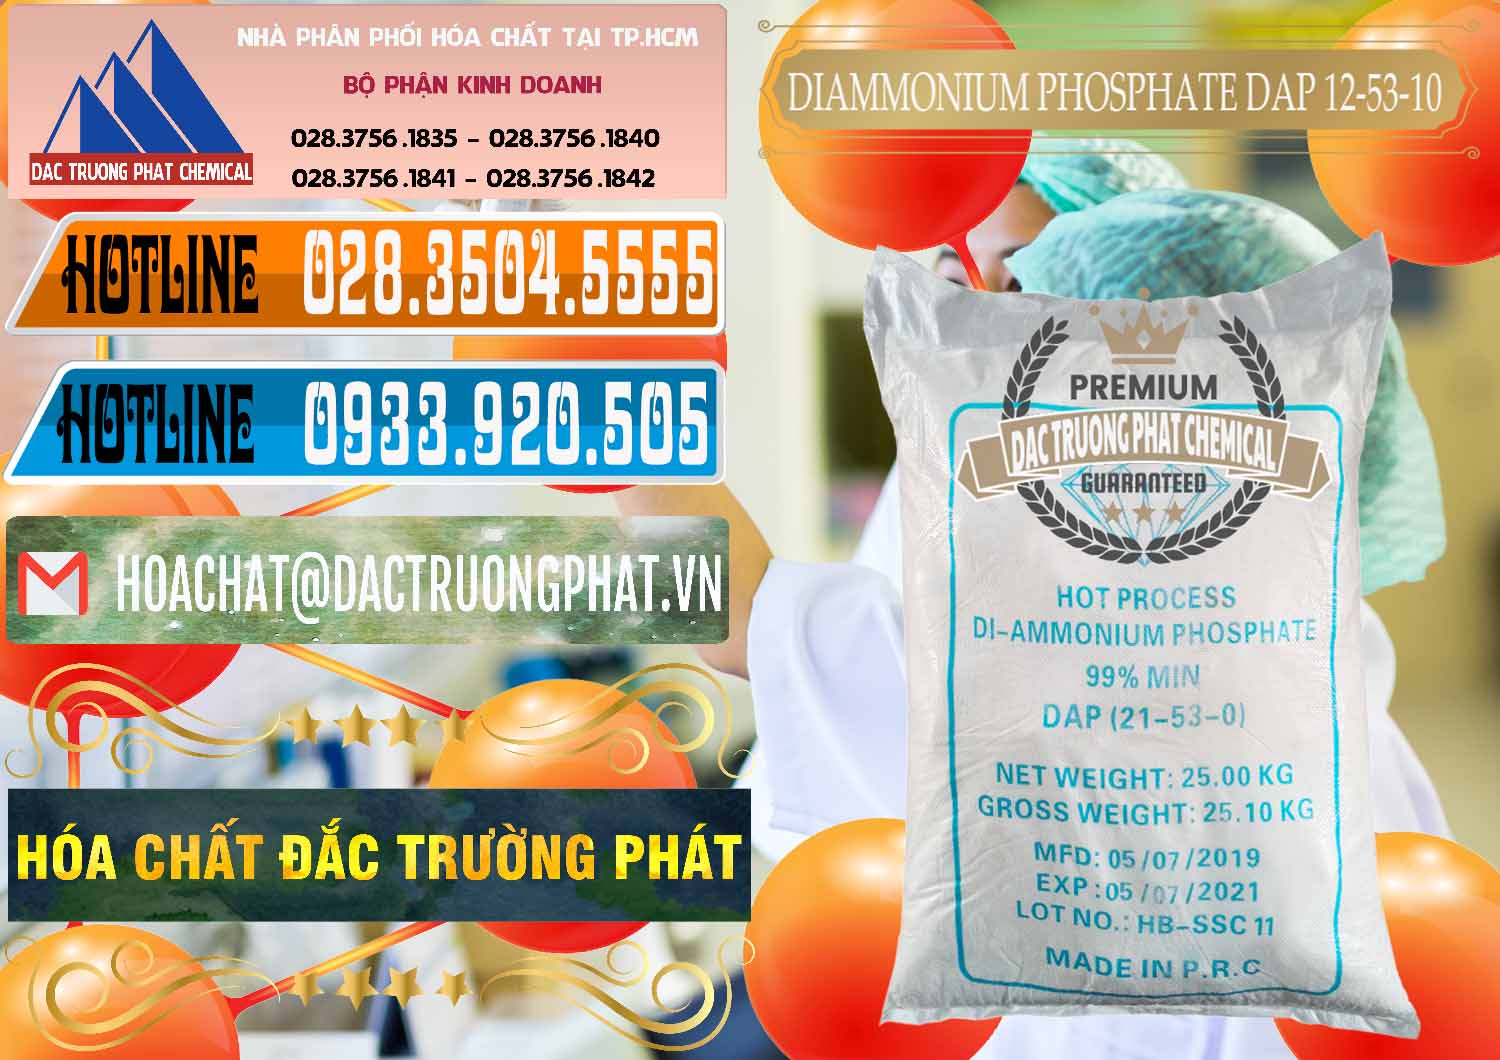 Cty chuyên phân phối _ bán DAP - Diammonium Phosphate Trung Quốc China - 0319 - Cty phân phối ( cung cấp ) hóa chất tại TP.HCM - stmp.net